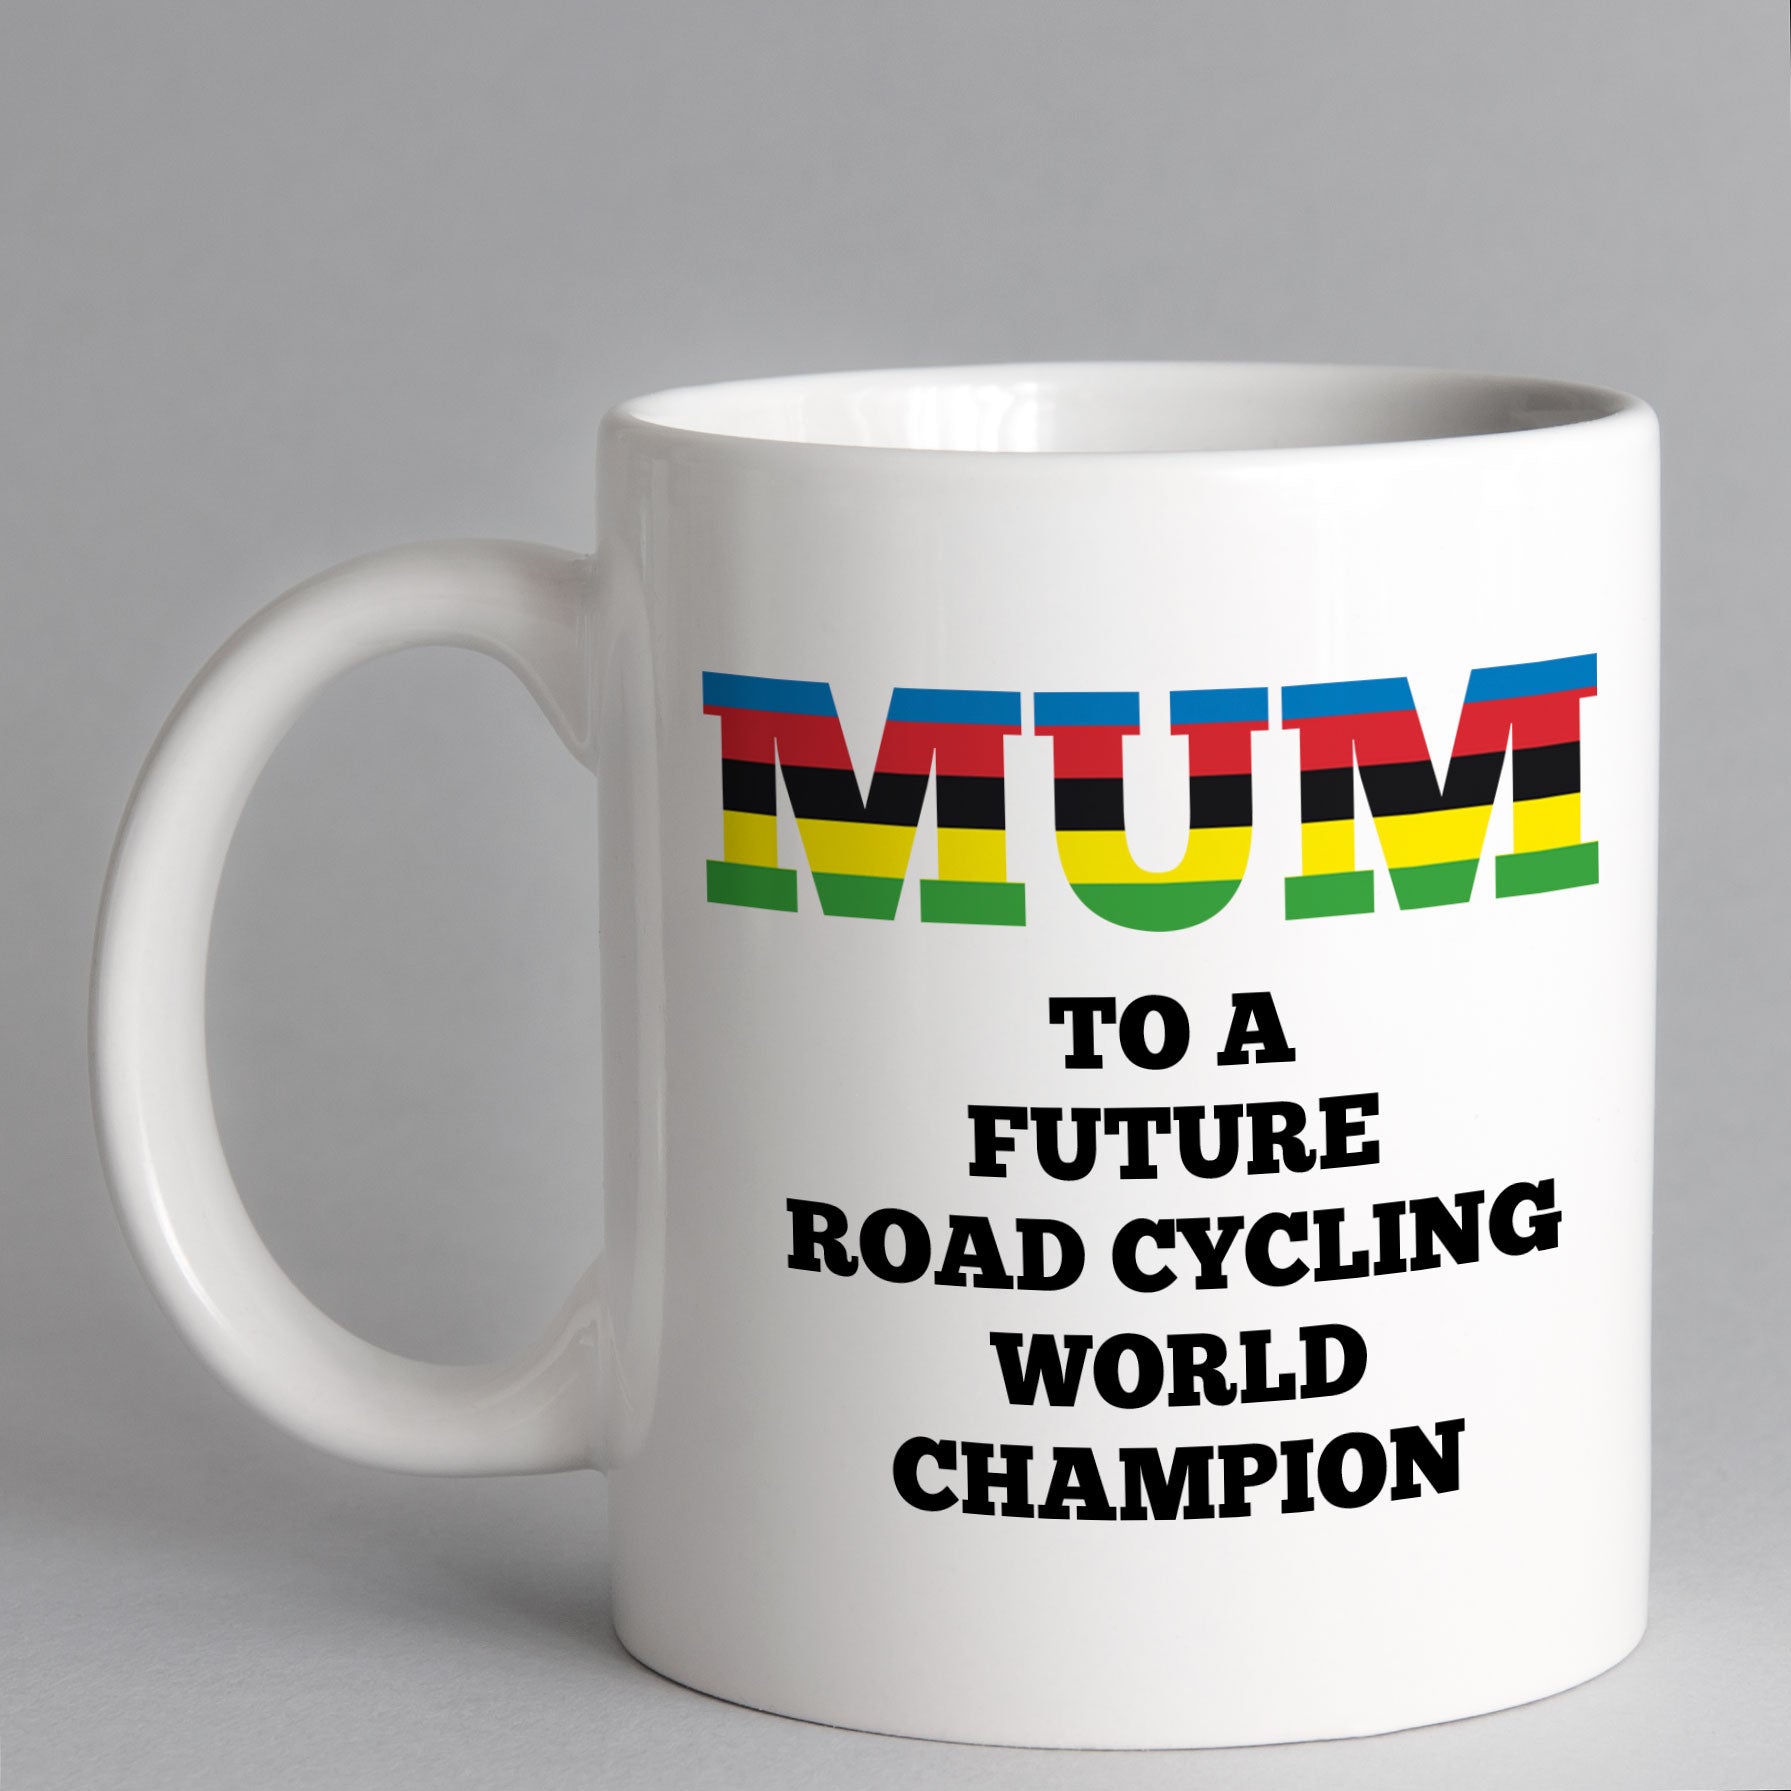 Mum To A Future Road Cycling World Champion Mug